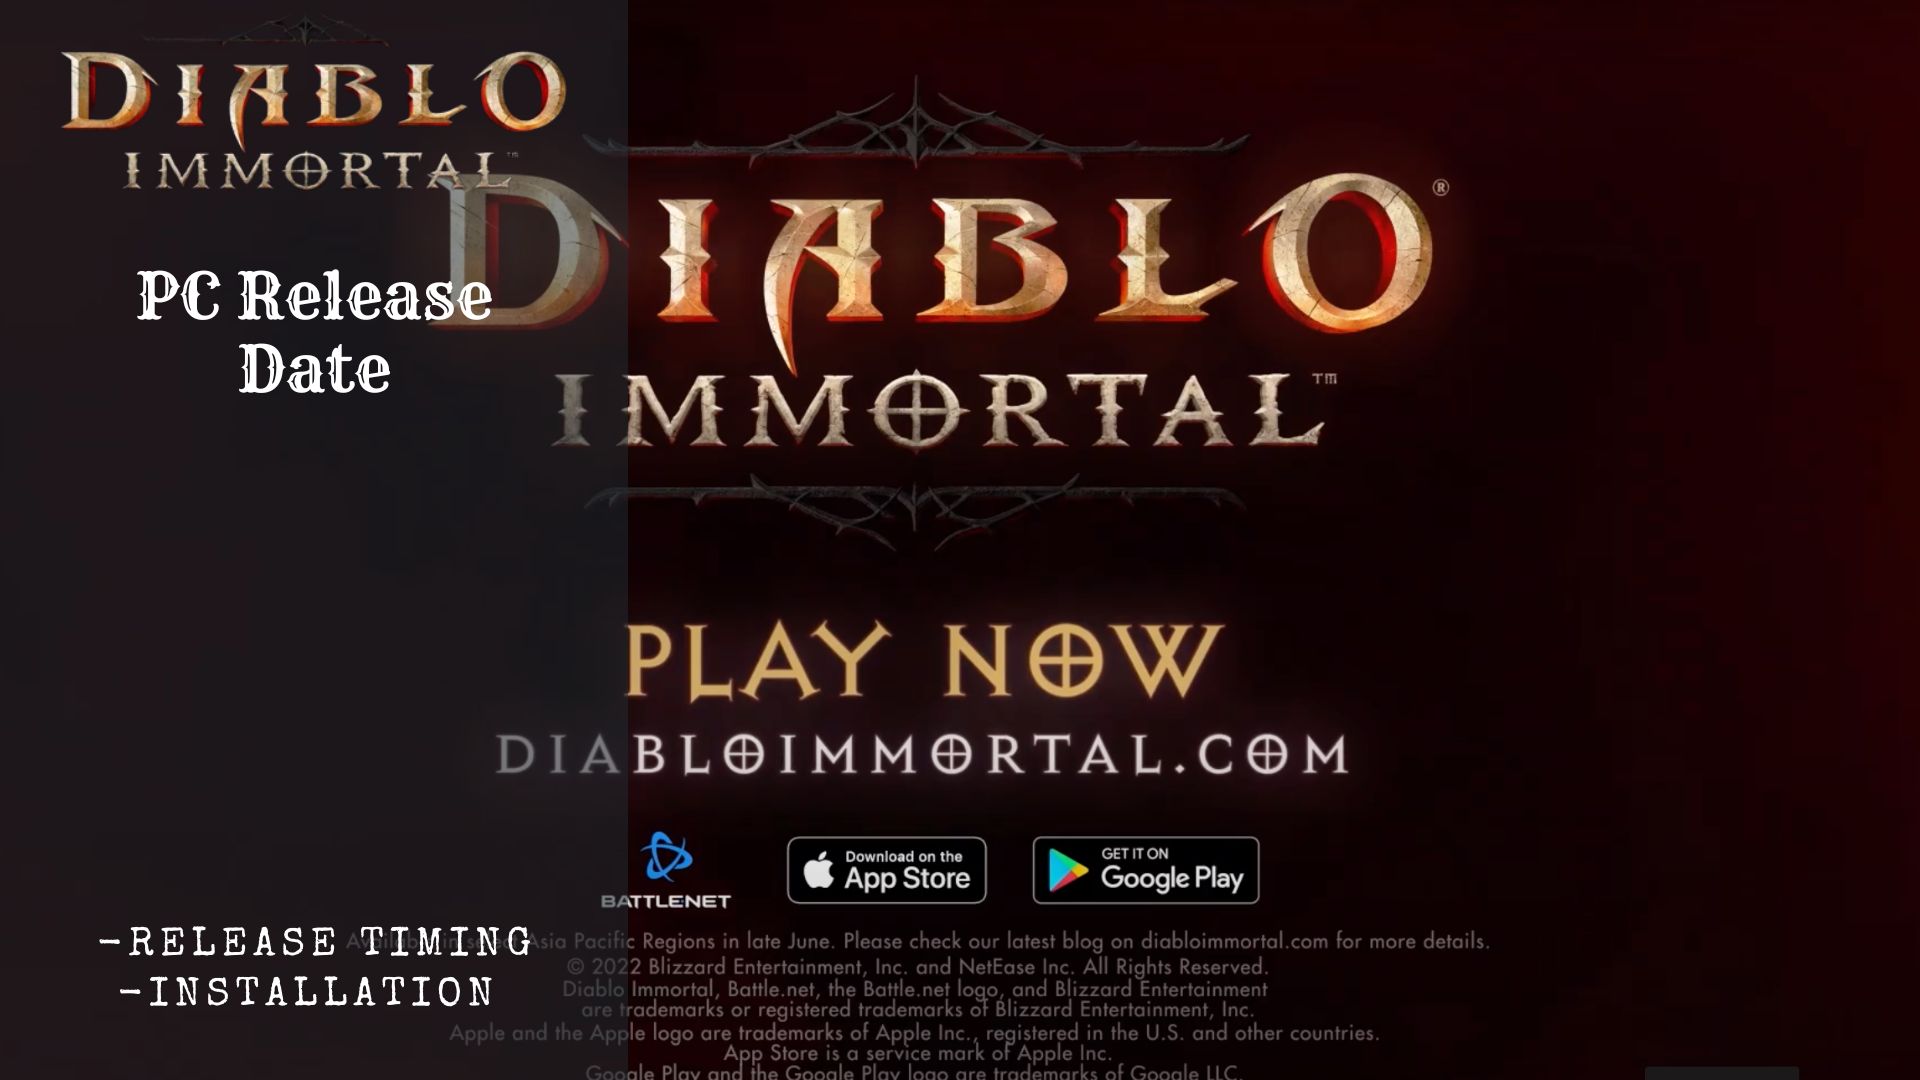 Diablo Immortal PC Release Date